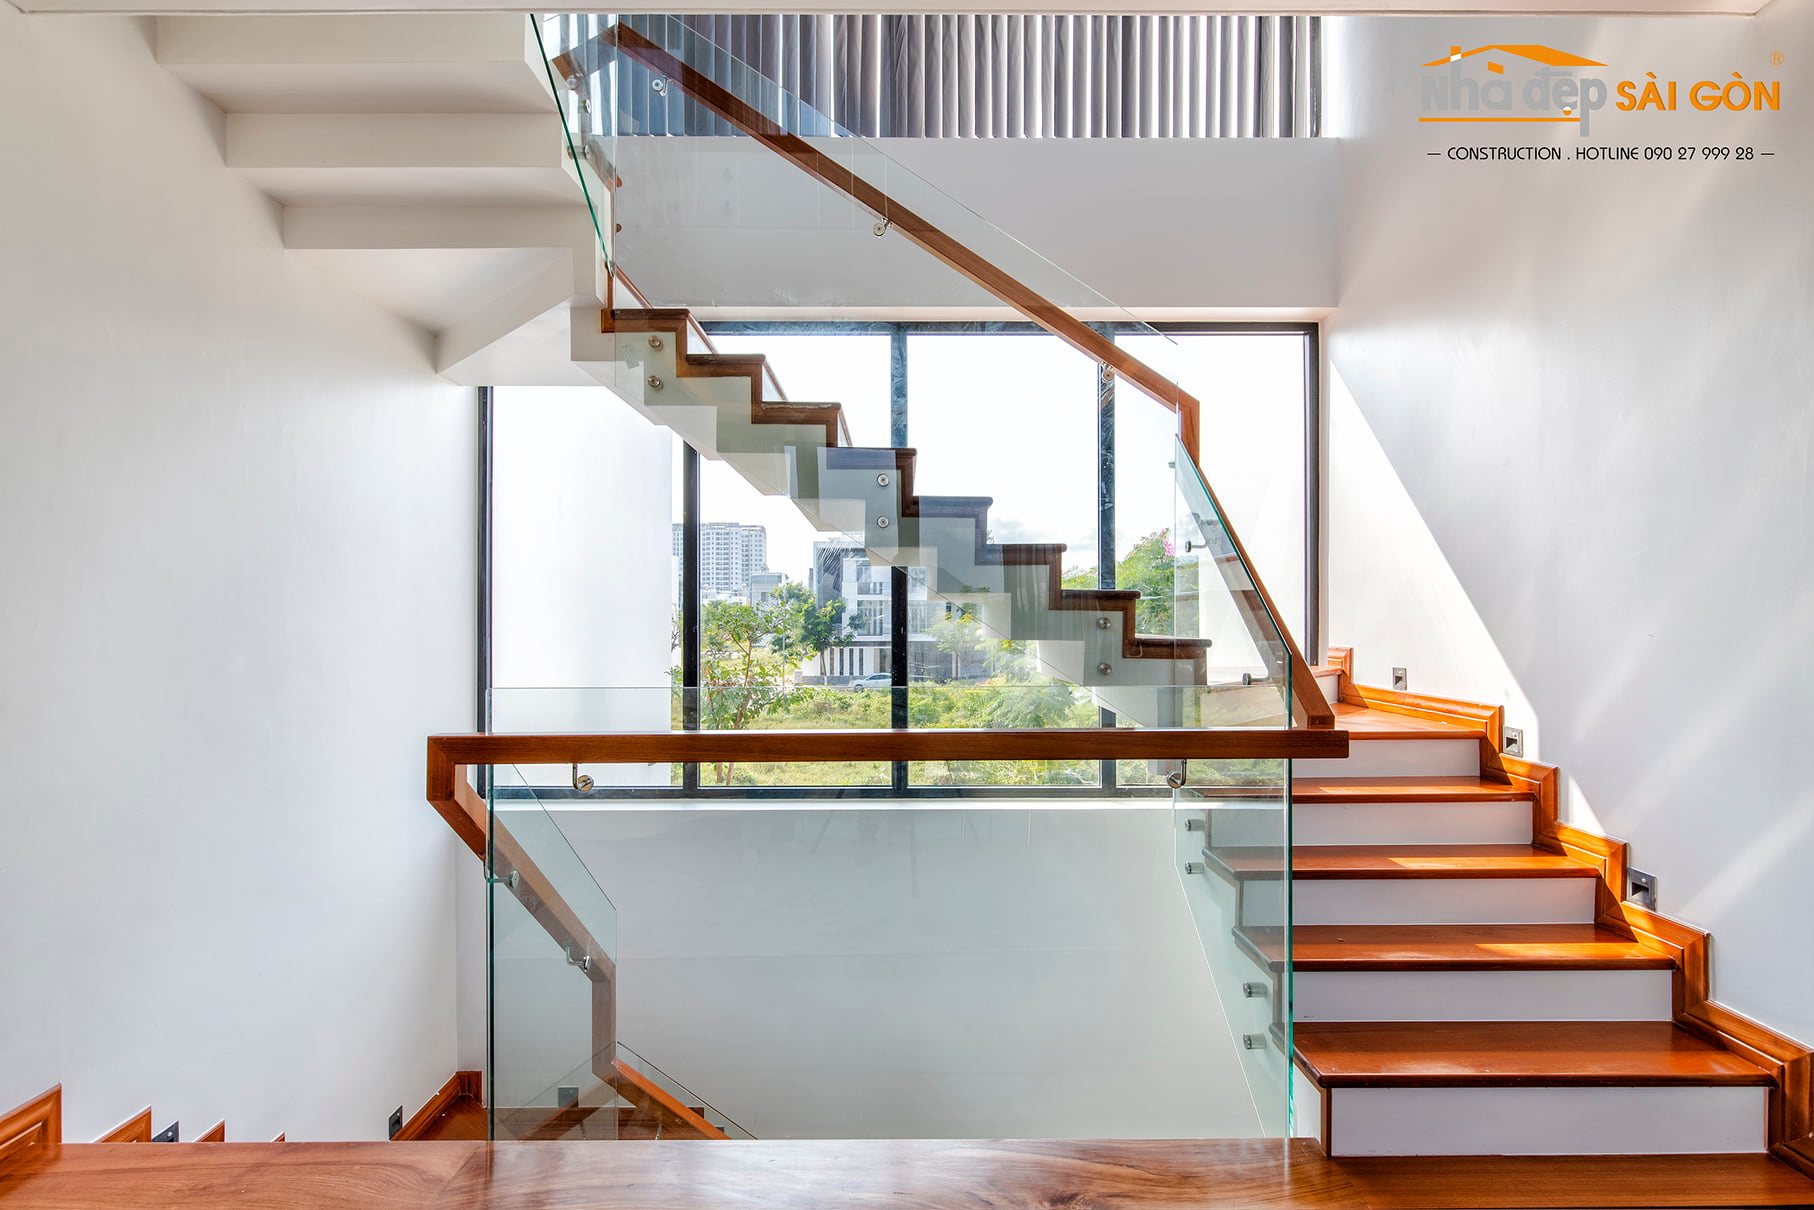 Thiết kế cầu thang đẹp 2024 luôn là điểm nhấn của không gian ngôi nhà. Với những đường nét mềm mại, tinh tế và hiện đại, thiết kế cầu thang sẽ làm cho không gian ngôi nhà của bạn trở nên ấn tượng hơn bao giờ hết. Hãy cùng khám phá những hình ảnh đầy nghệ thuật và độc đáo của thiết kế cầu thang đẹp này.